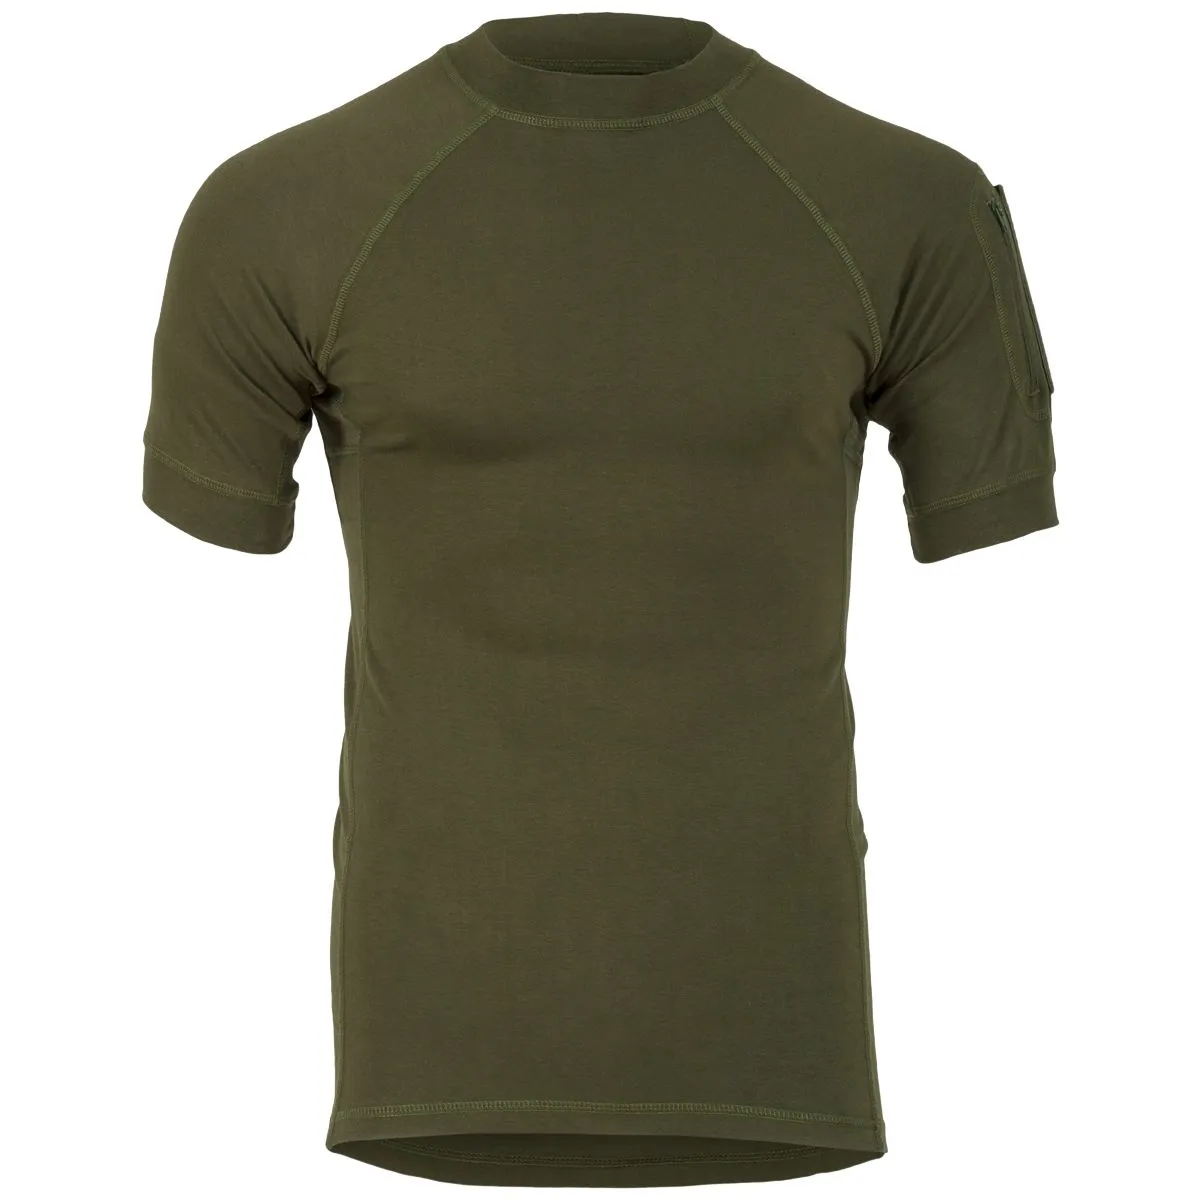 Highlander Forces Tactical Combat T-Shirt - Olive